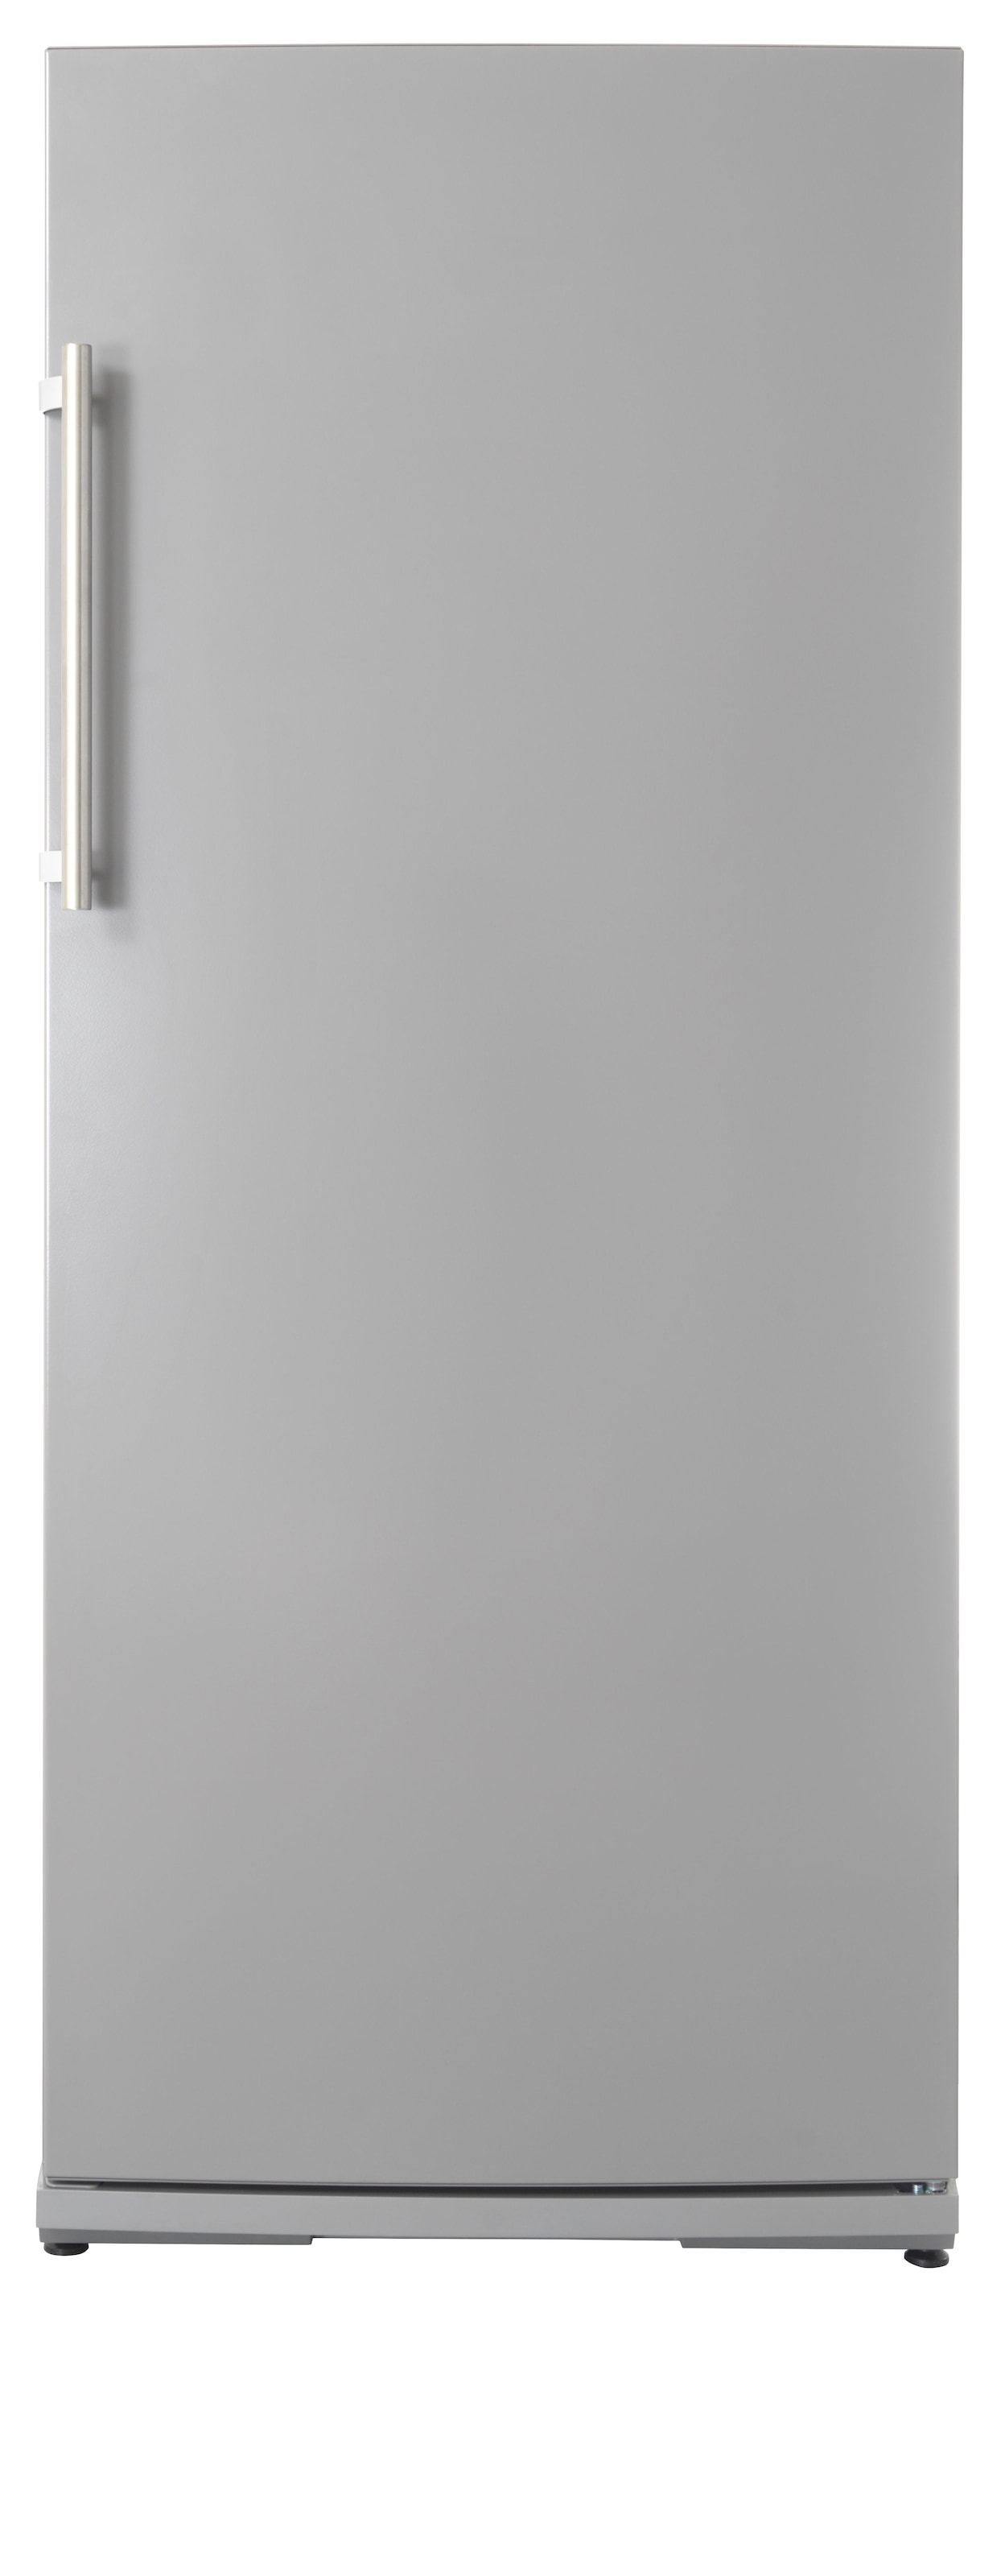 NABO Getränkekühlschrank, FK 2540, 145 cm hoch, 60 cm breit